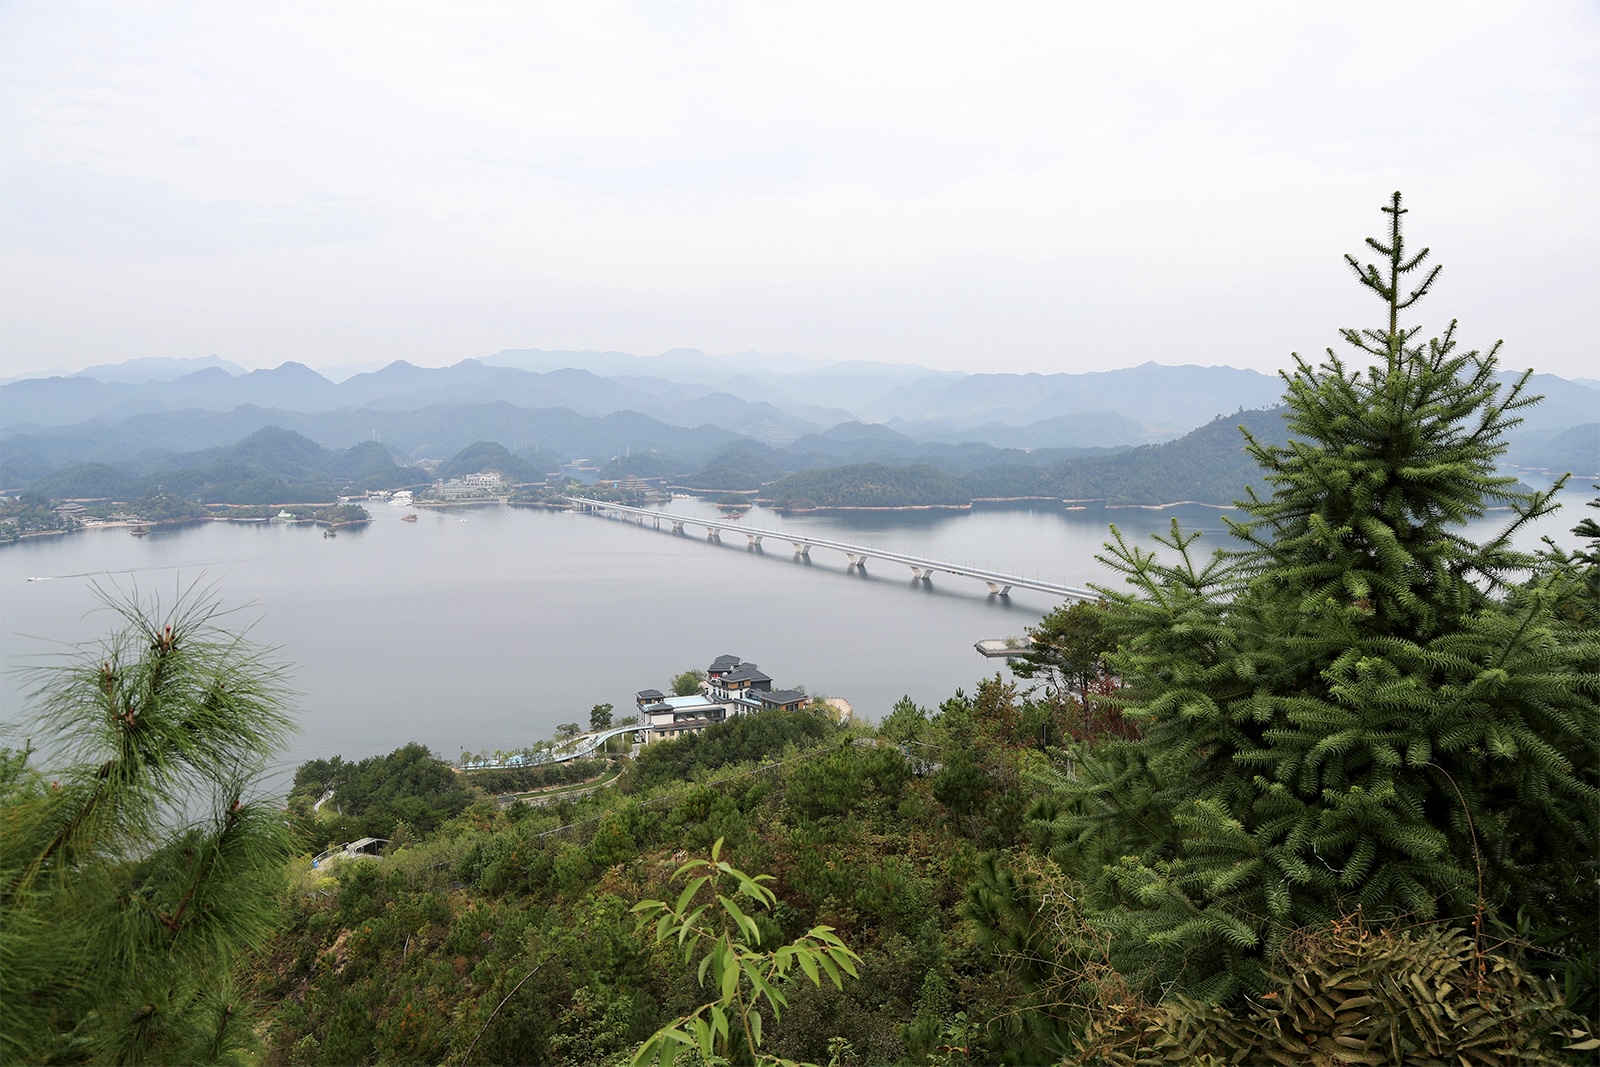 A view of Qiandao Lake from the top of Tianyu Mountain in Chun'an County, Zhejiang Province. /CGTN